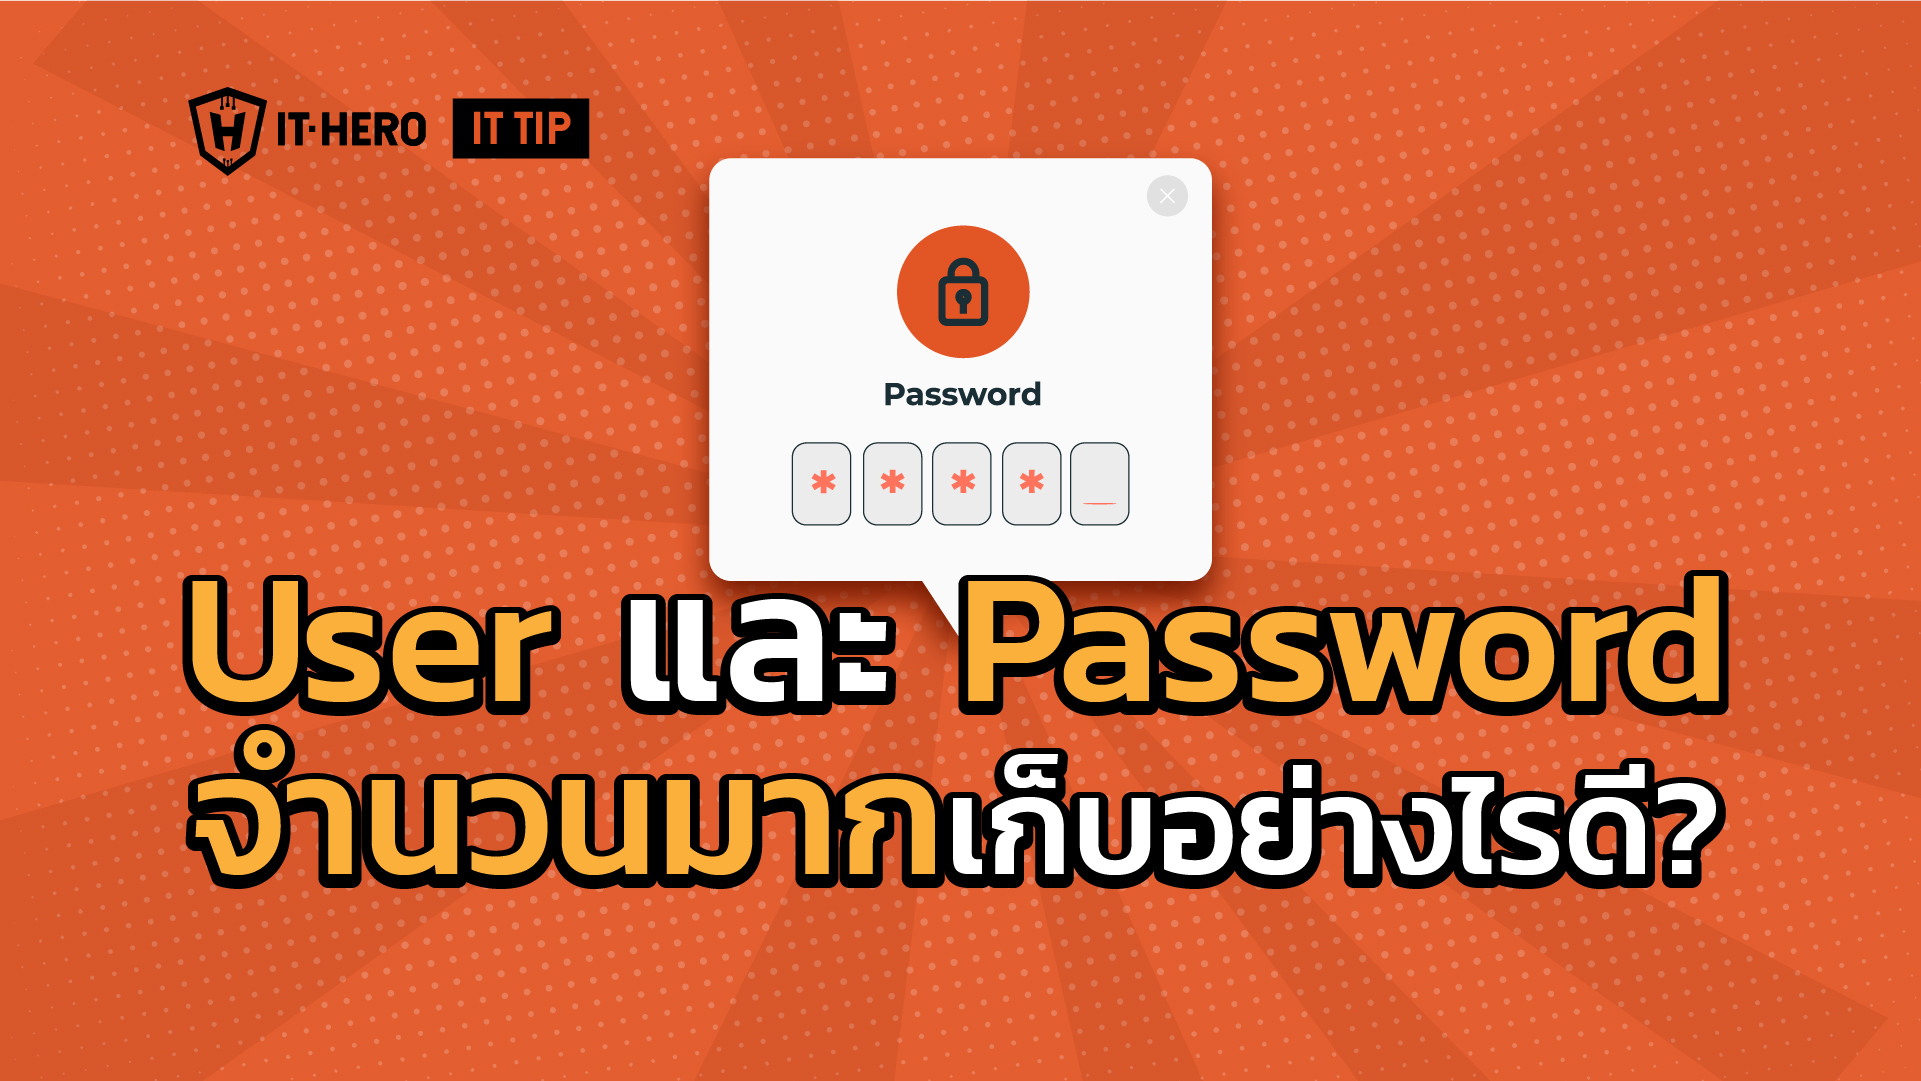 ปวดหัวกับการเก็บ username Password จำนวนมากมีวิธีการจัดการอย่างไรดี